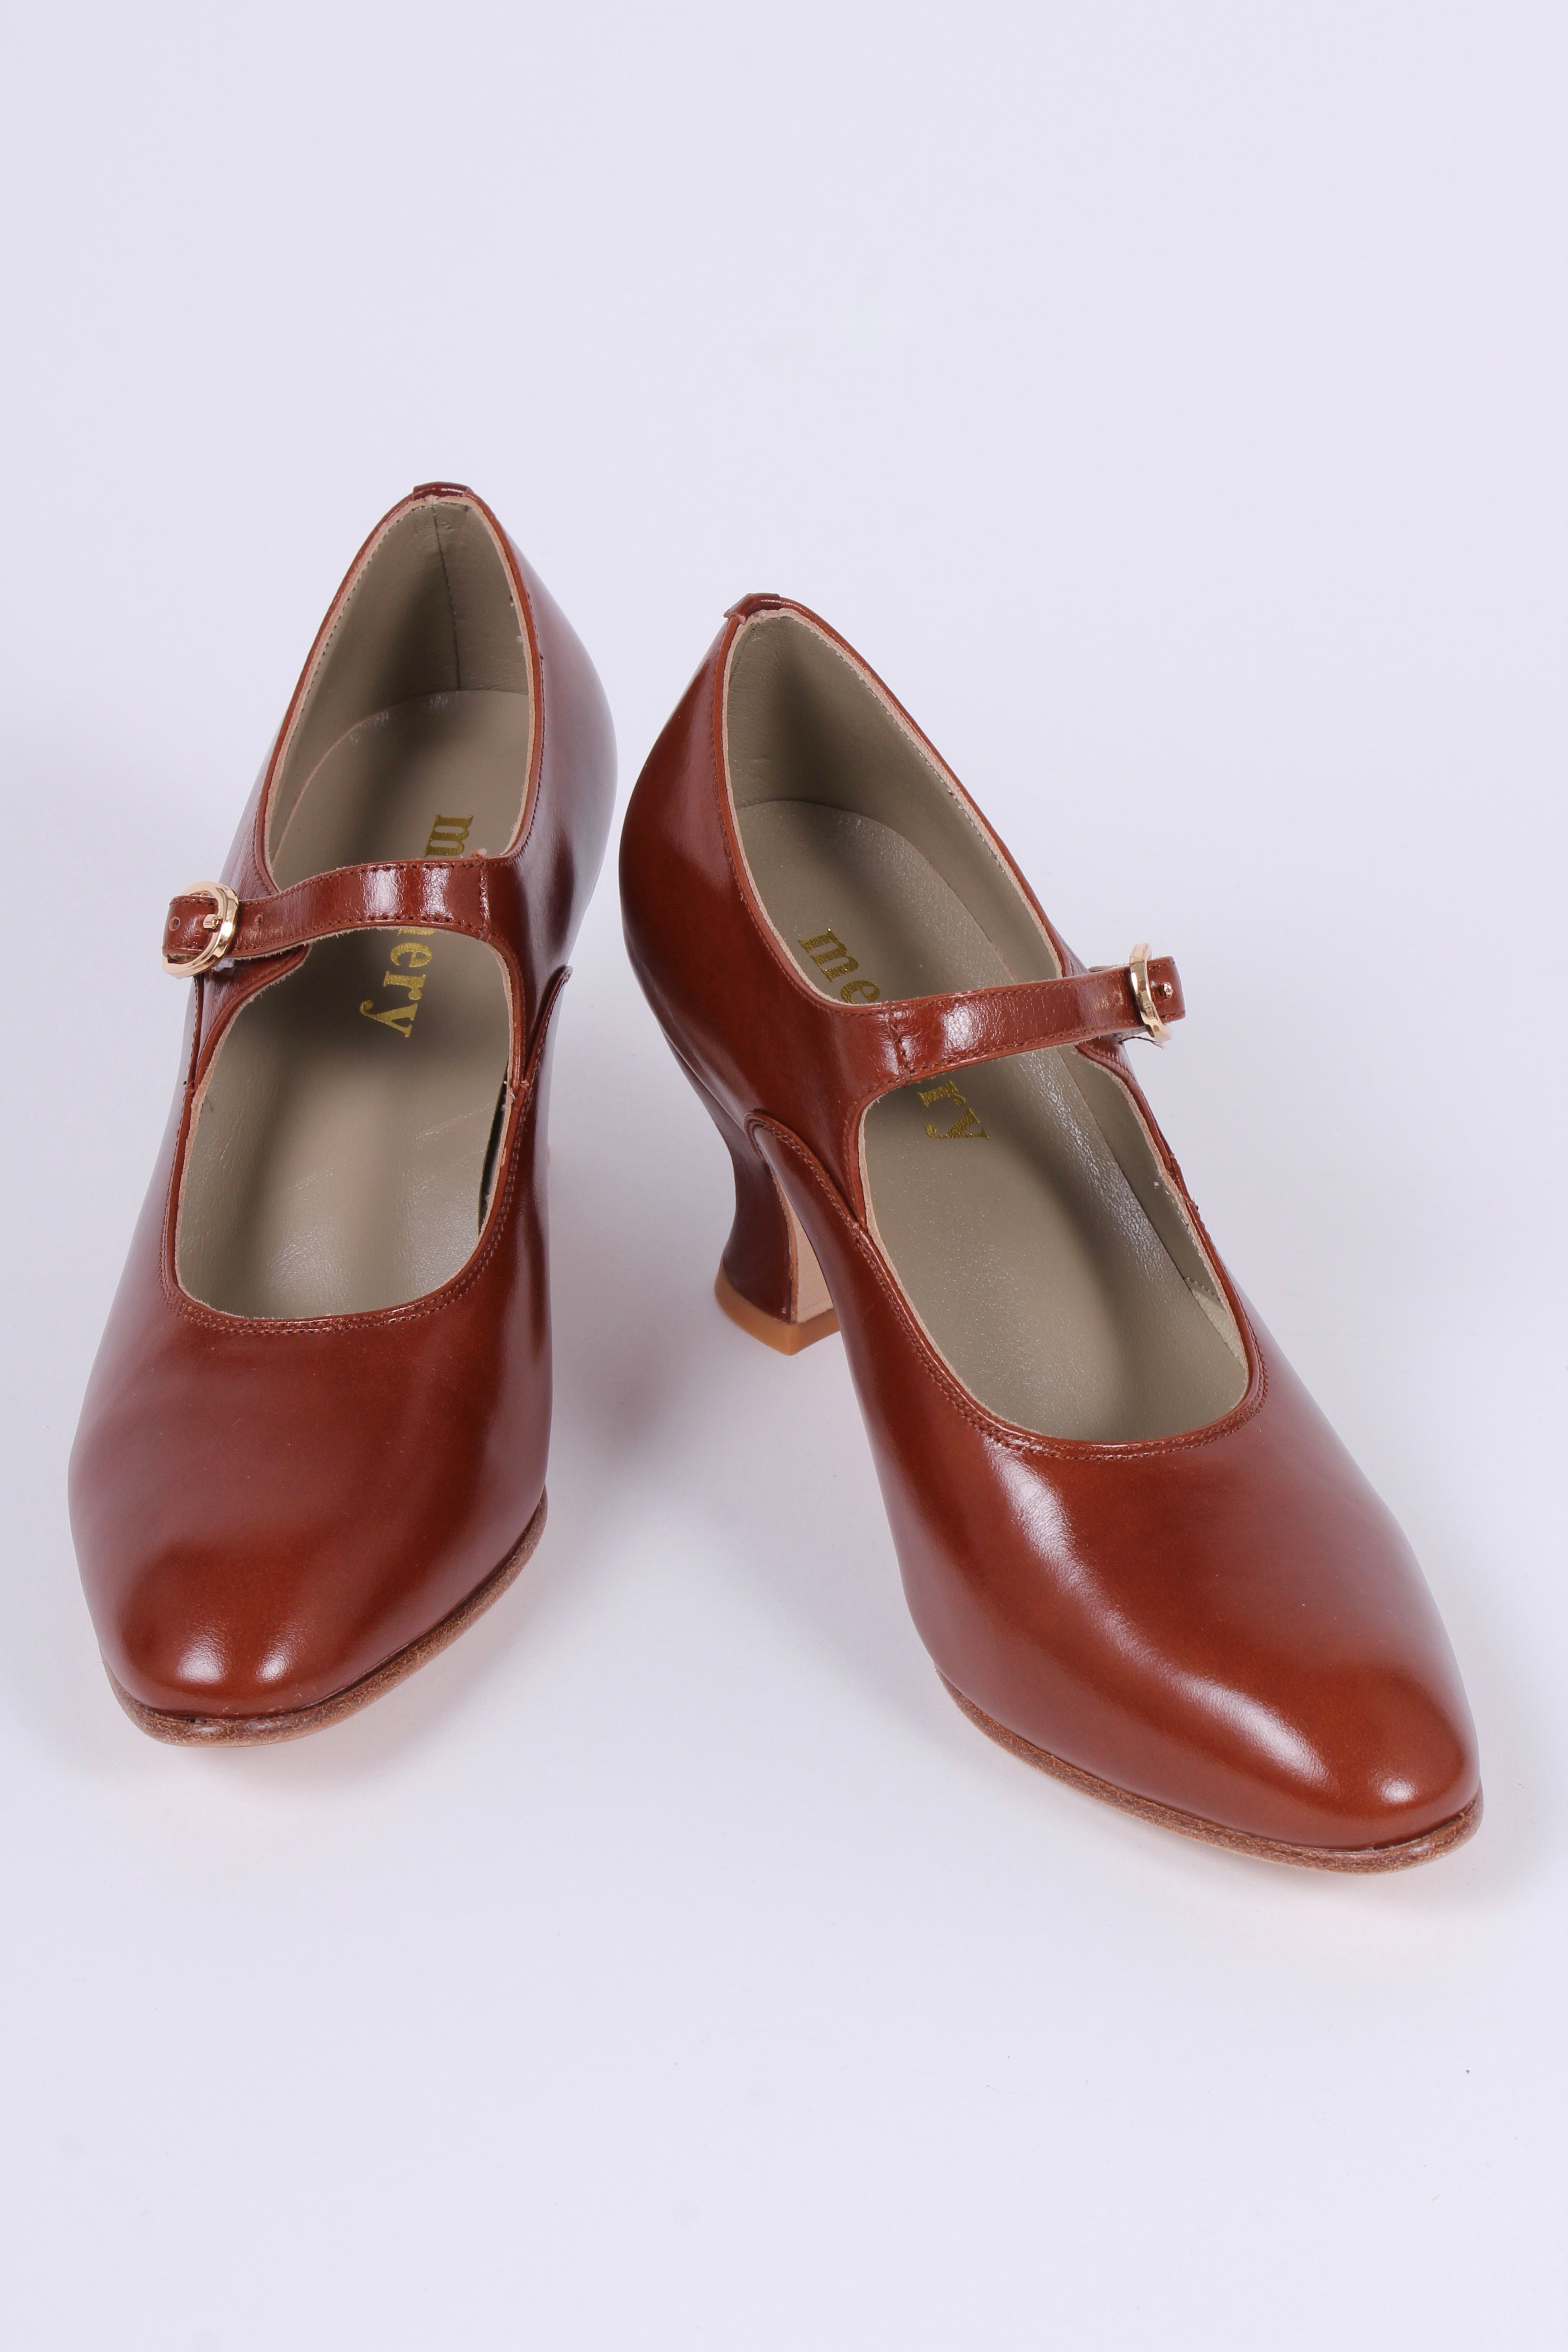 1920'er vintage style pumps med pompadour hæl - Cognac brun - Yvonne